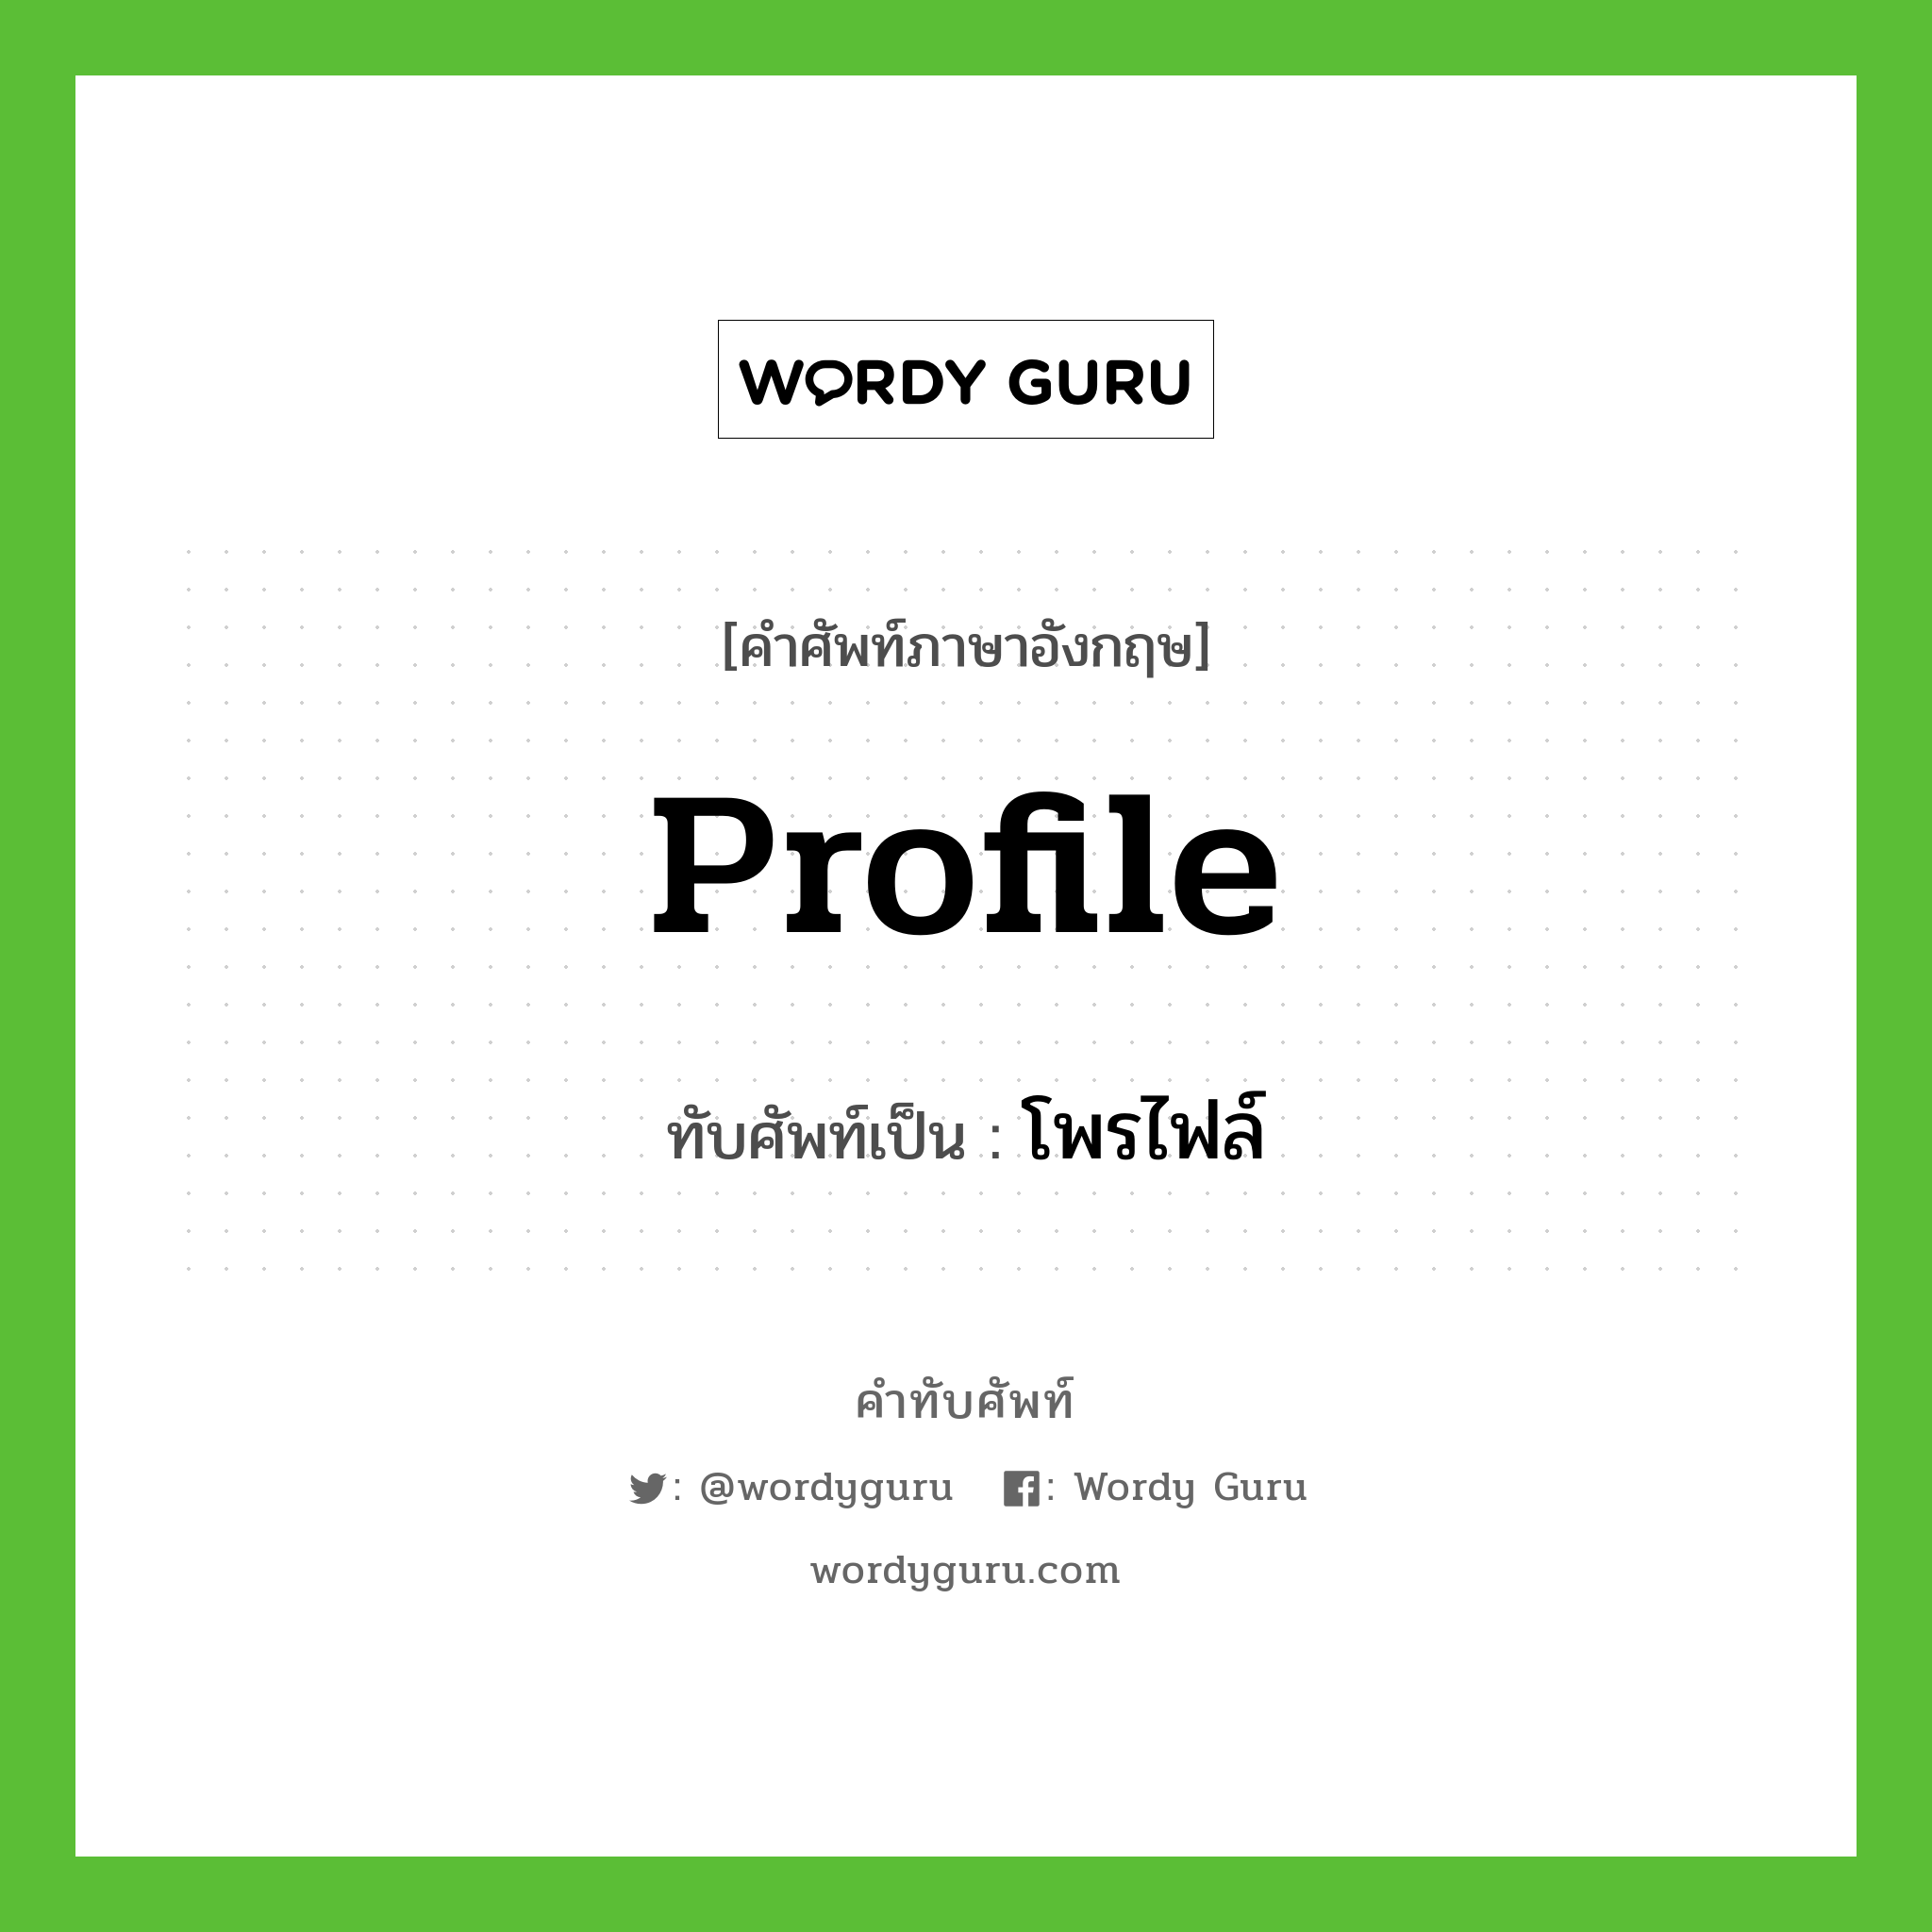 profile เขียนเป็นคำไทยว่าอะไร?, คำศัพท์ภาษาอังกฤษ profile ทับศัพท์เป็น โพรไฟล์